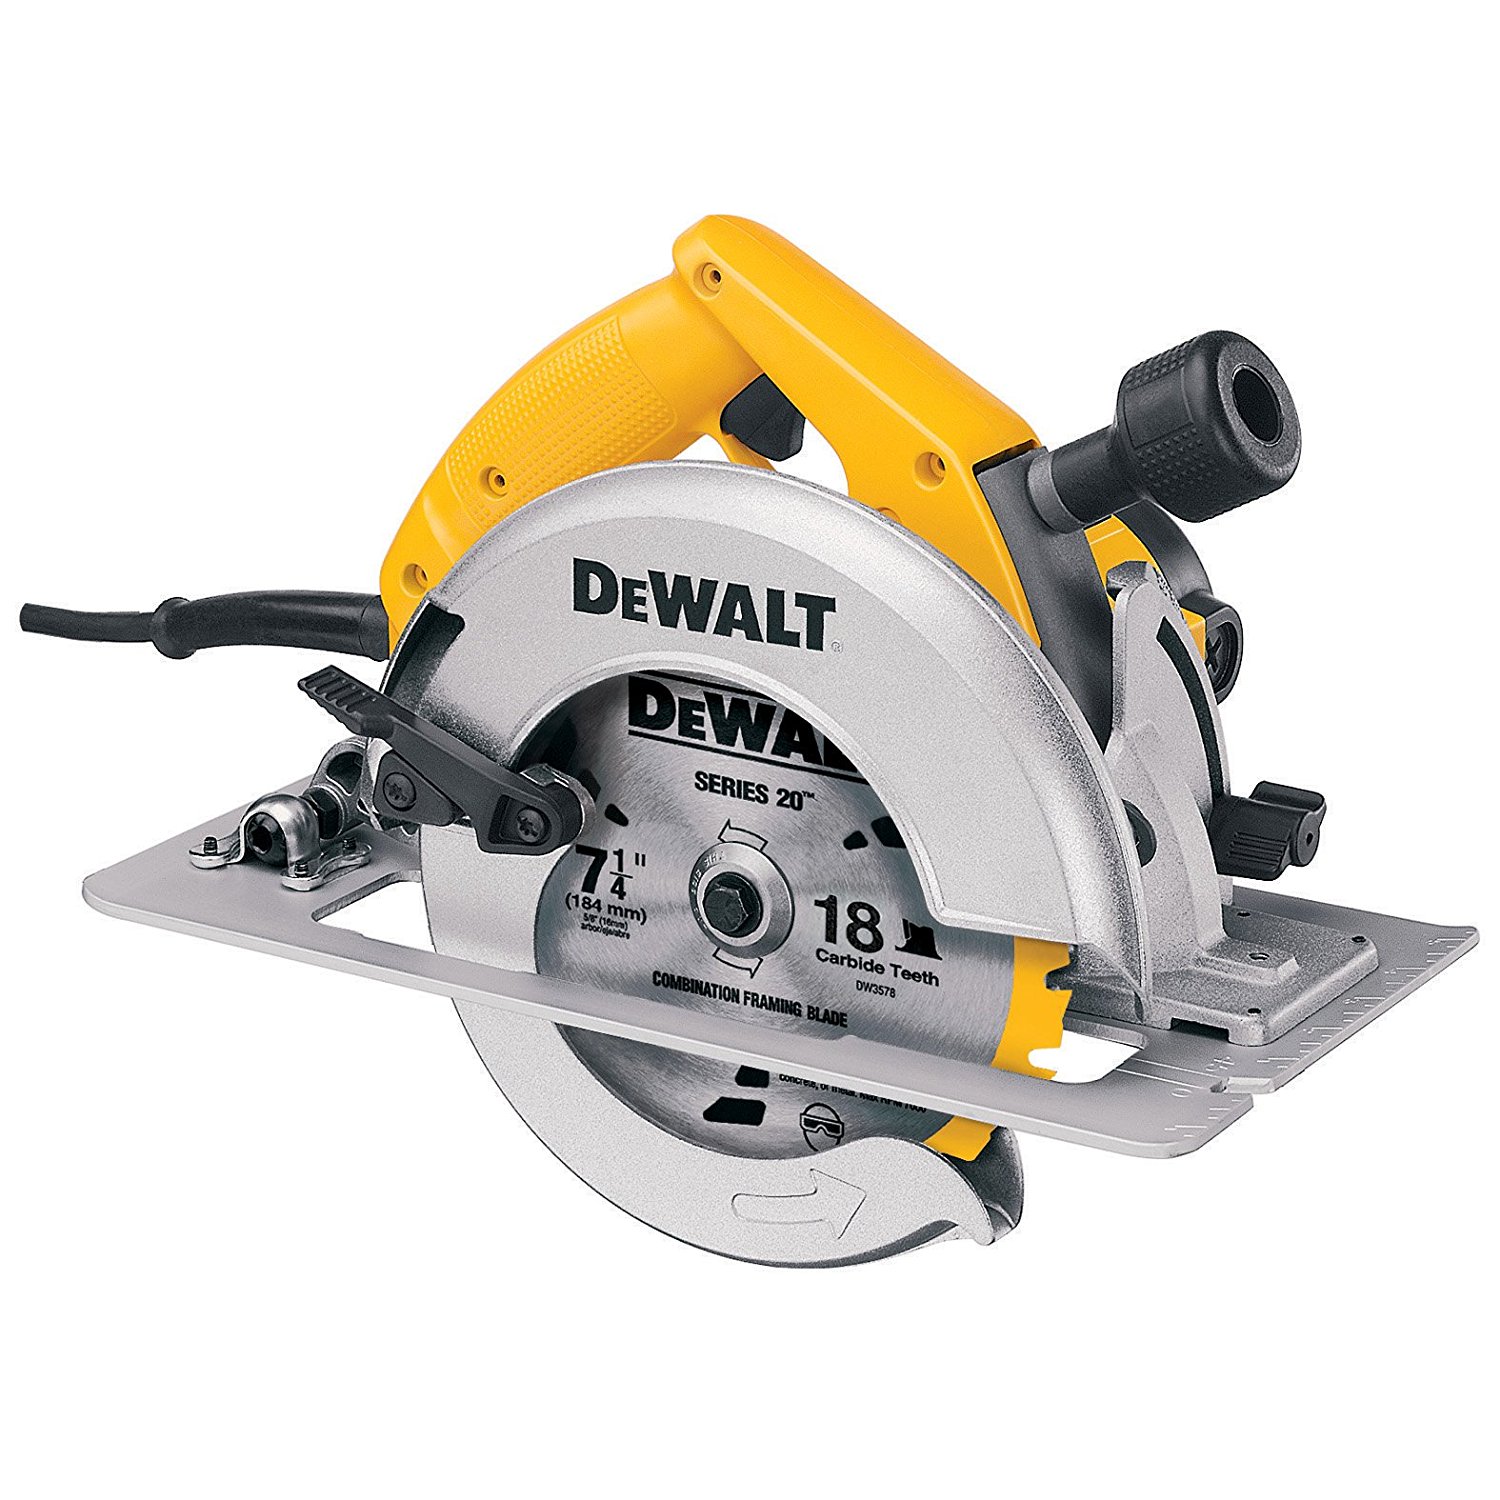 DEWALT DW364 7-1/4-Inch Circular Saw with Electric Brake and Rear ...